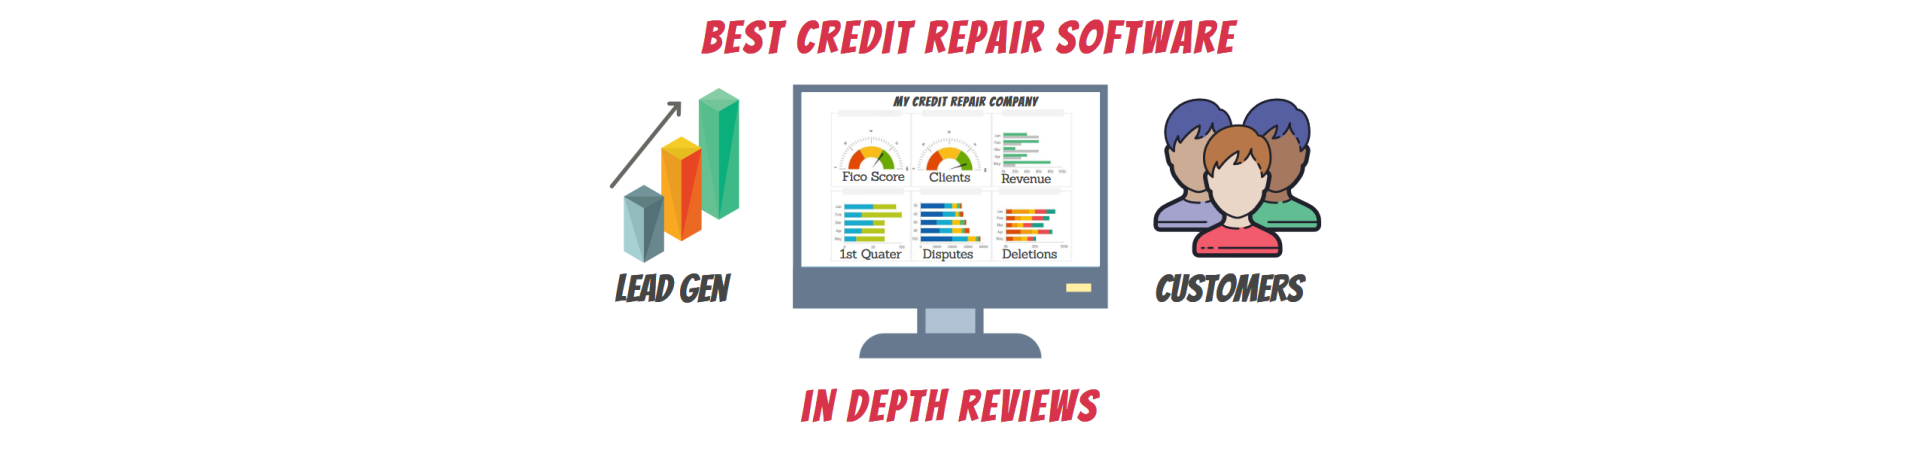 Best credit repair software reviews